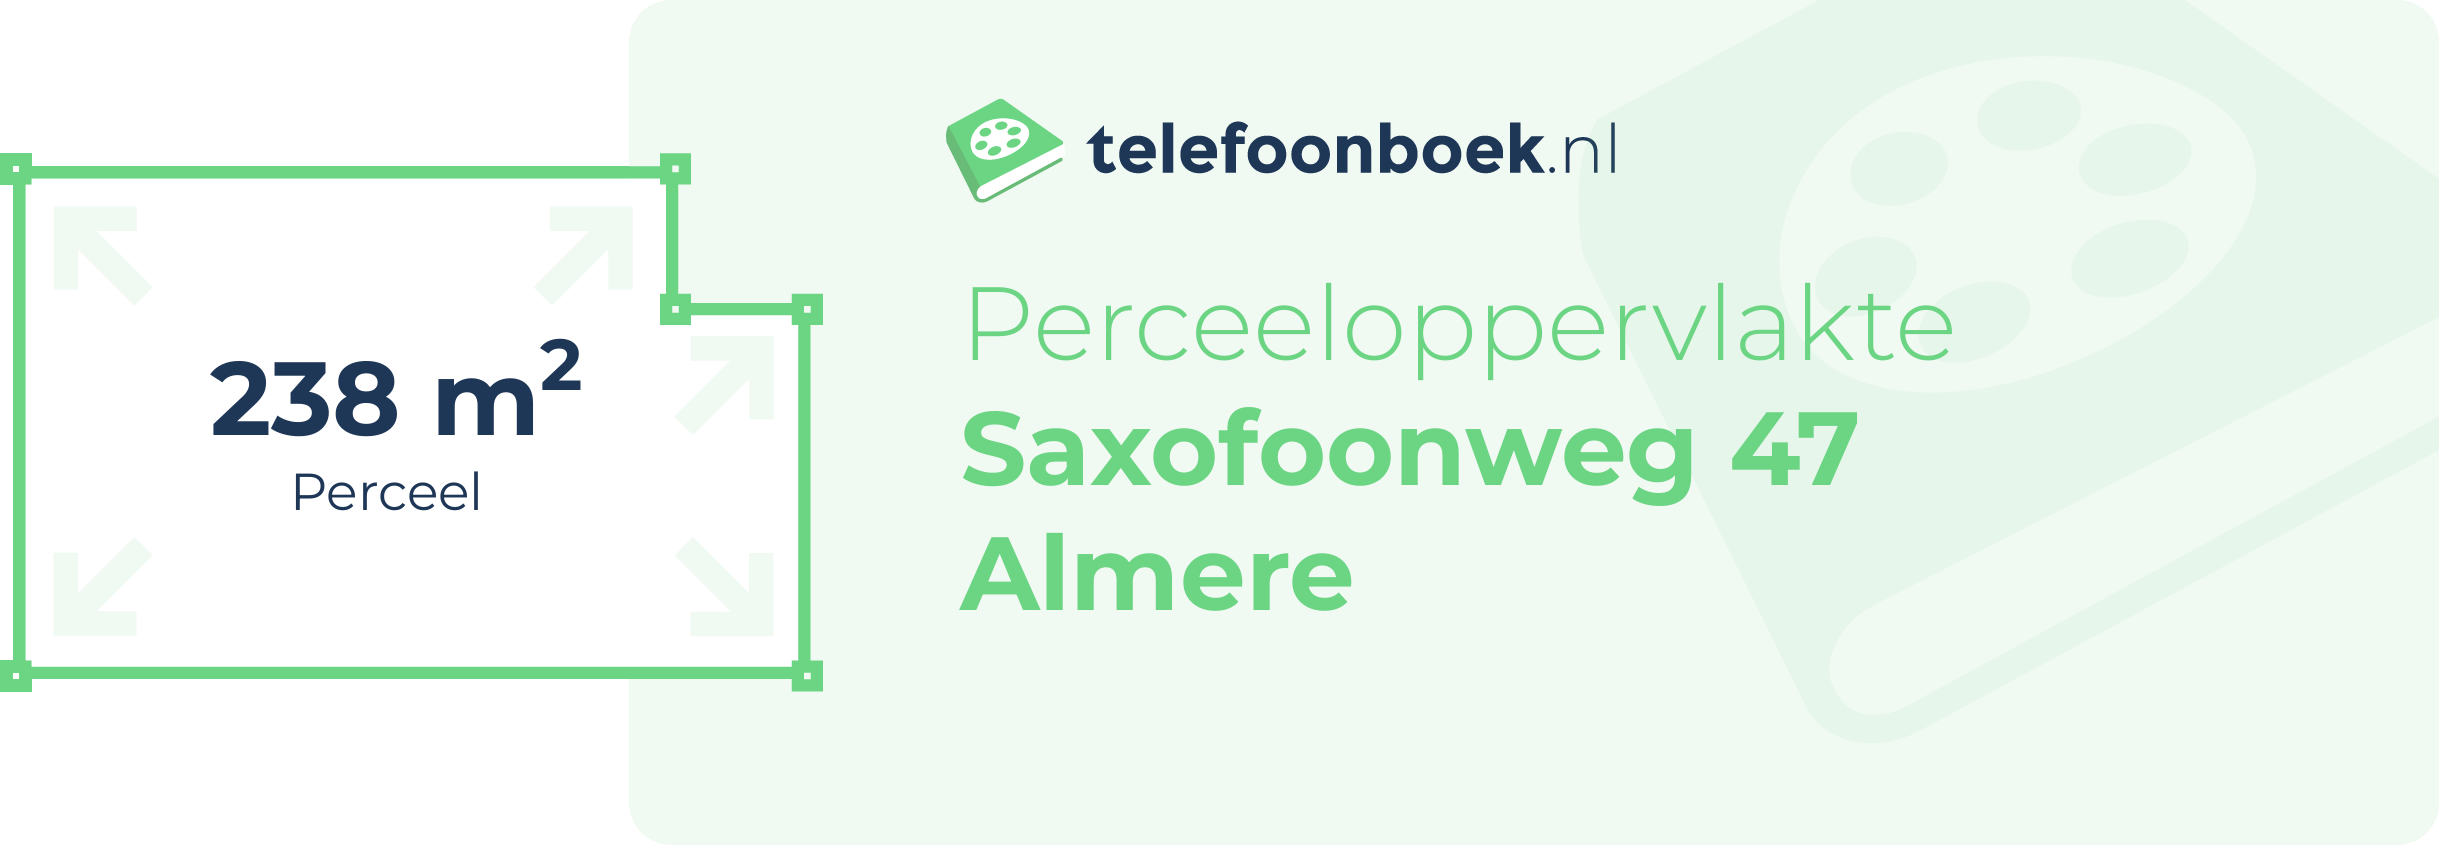 Perceeloppervlakte Saxofoonweg 47 Almere